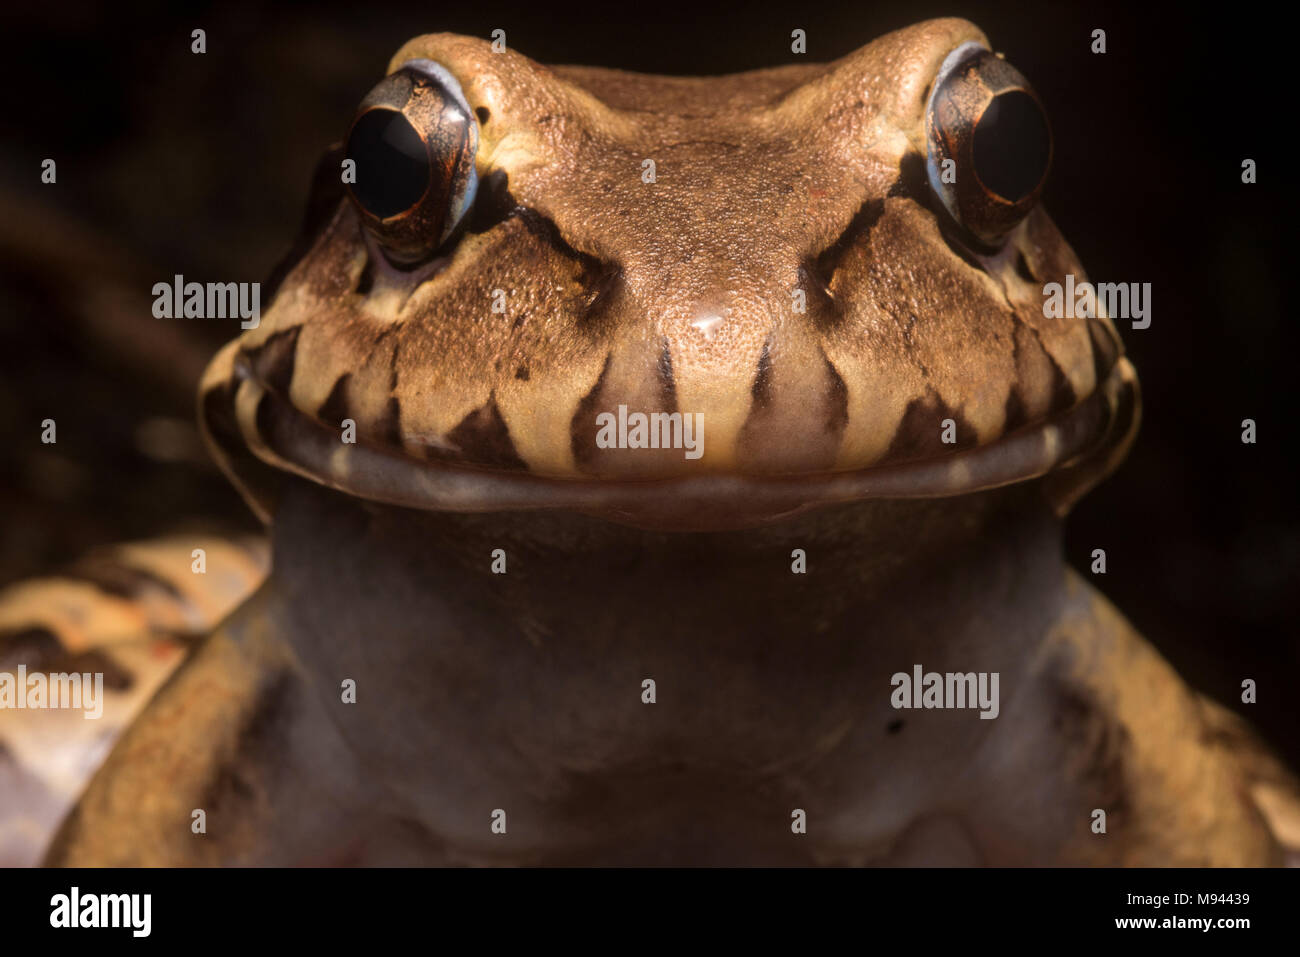 Il fumoso jungle frog (Leptodactylus pentadactylus) è la più grande specie rana nella sua gamma, si siede sul pavimento di foresta e si nutre di piccole prede. Foto Stock